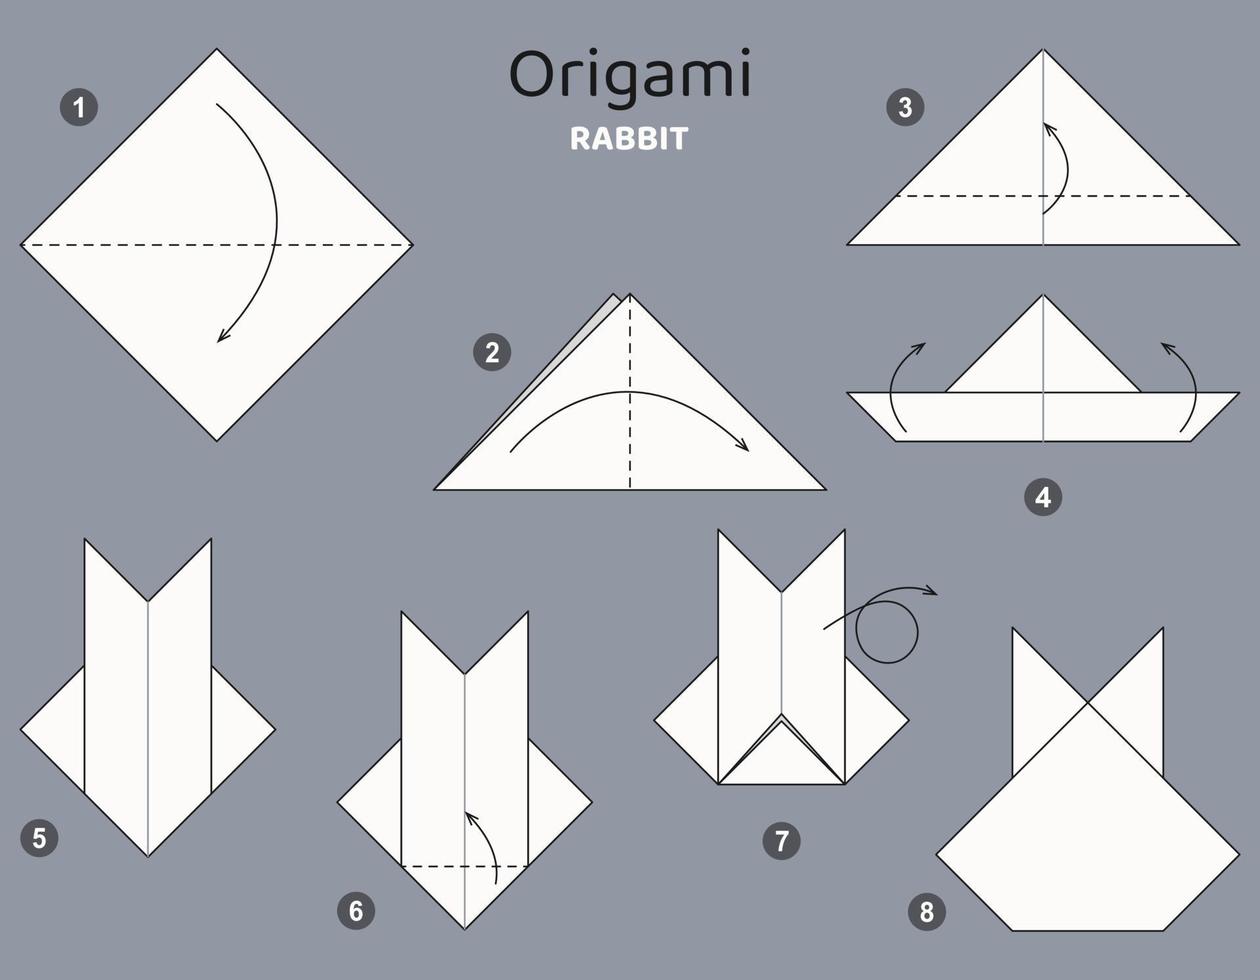 esquema de origami de conejo tutorial. elementos de origami aislados sobre fondo gris. papiroflexia para niños. paso a paso como hacer un conejo de origami. ilustración vectorial vector